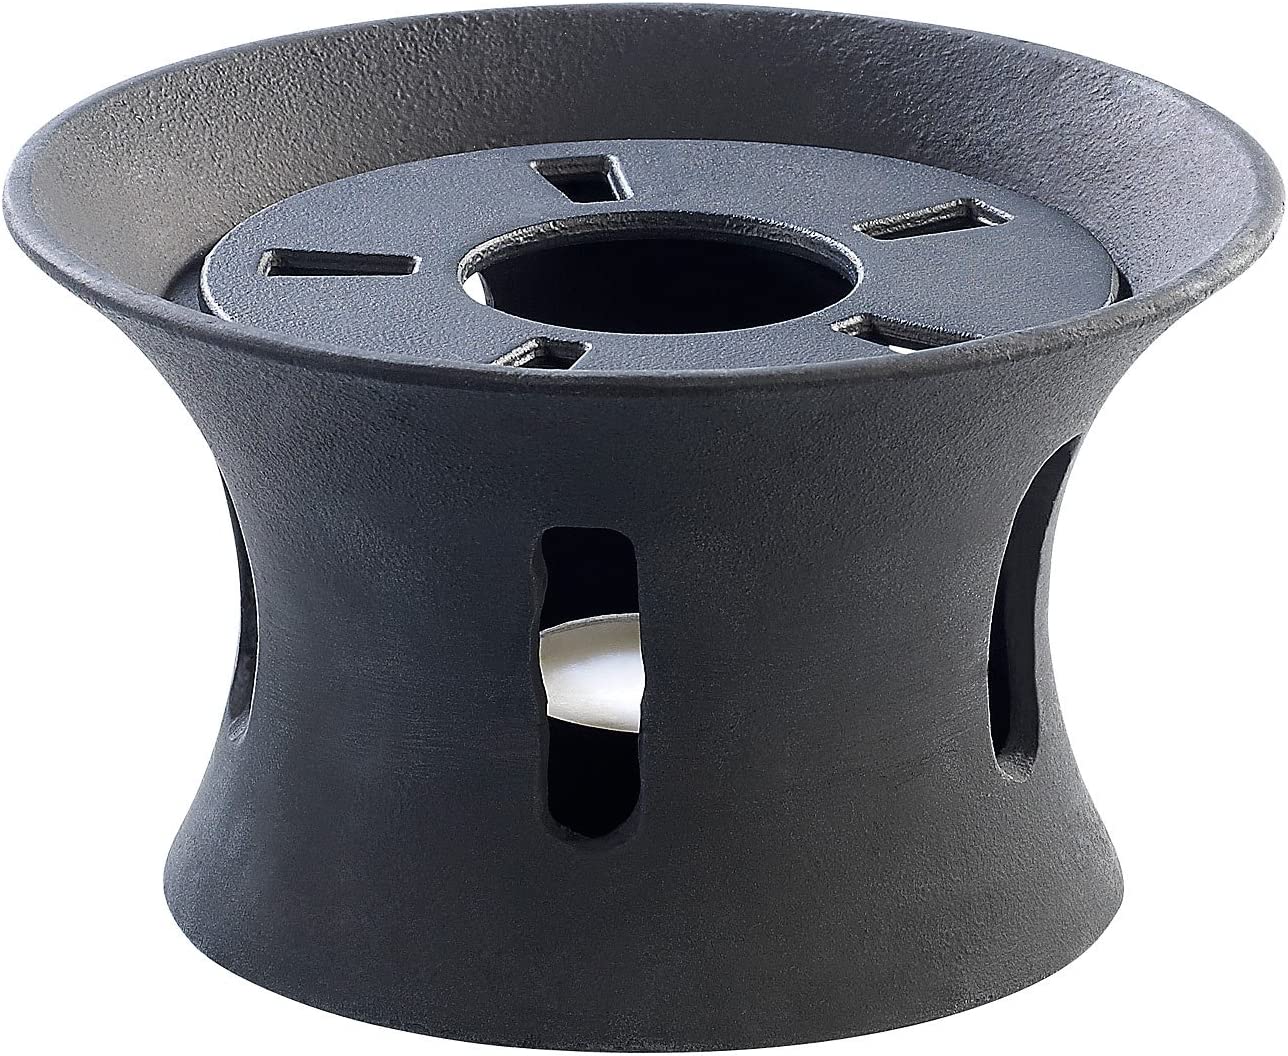 ROSENSTEIN & SOHNE Rosenstein & Söhne Accessory for Teapot with Tea Light Teapot Warmer Cast Iron for Asian Teapot (Black)